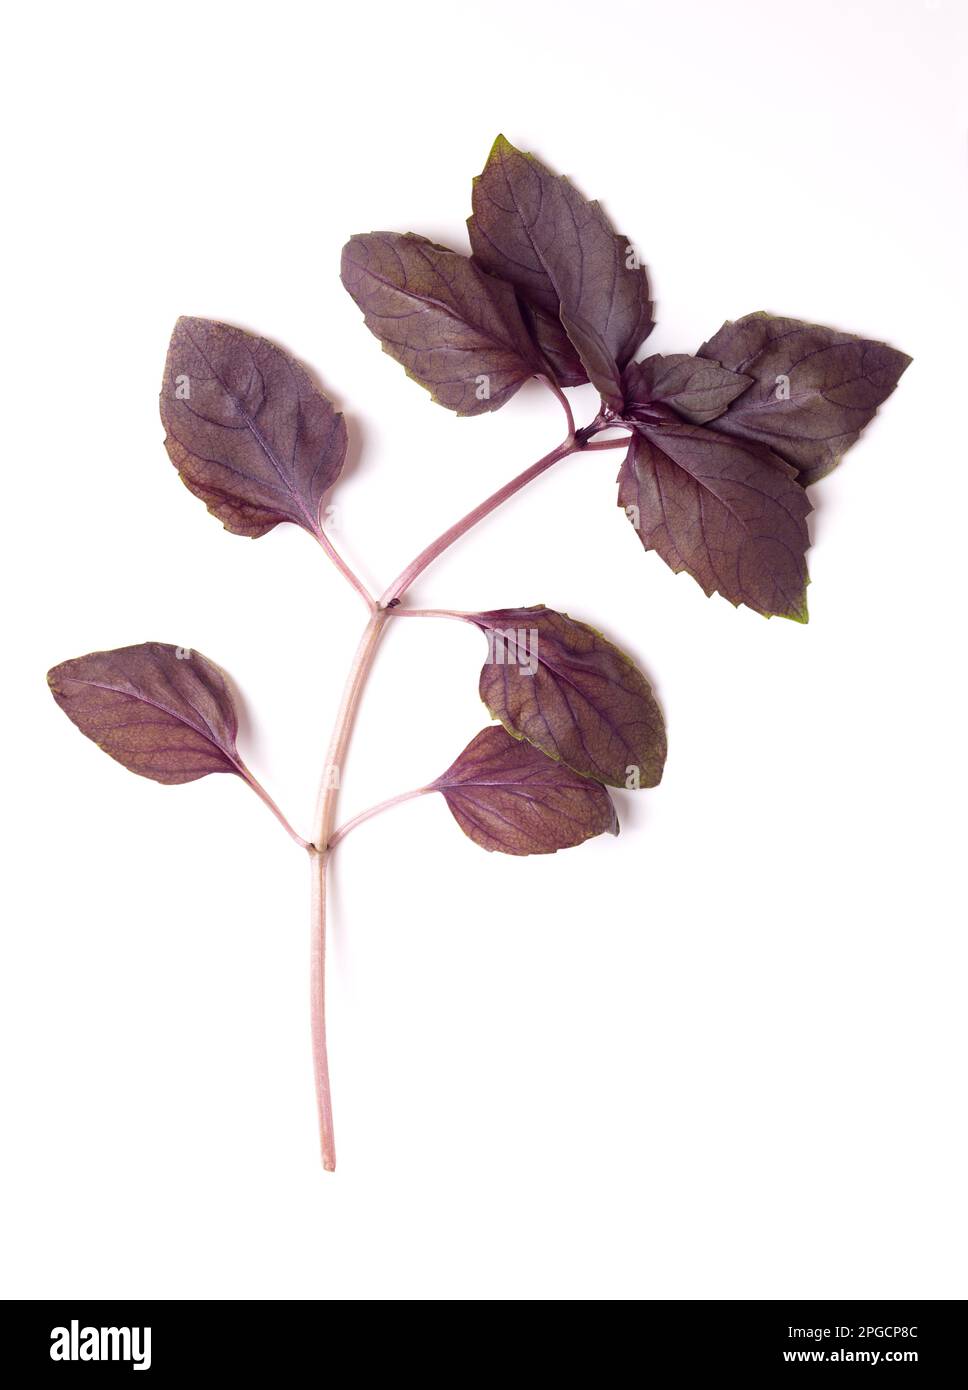 Branche de basilic rubin rouge d'en haut. Tige avec des feuilles fraîches d'Ocimum basilicum purpurascens, une variation de basilic doux, avec des feuilles rougeâtres-pourpres. Banque D'Images